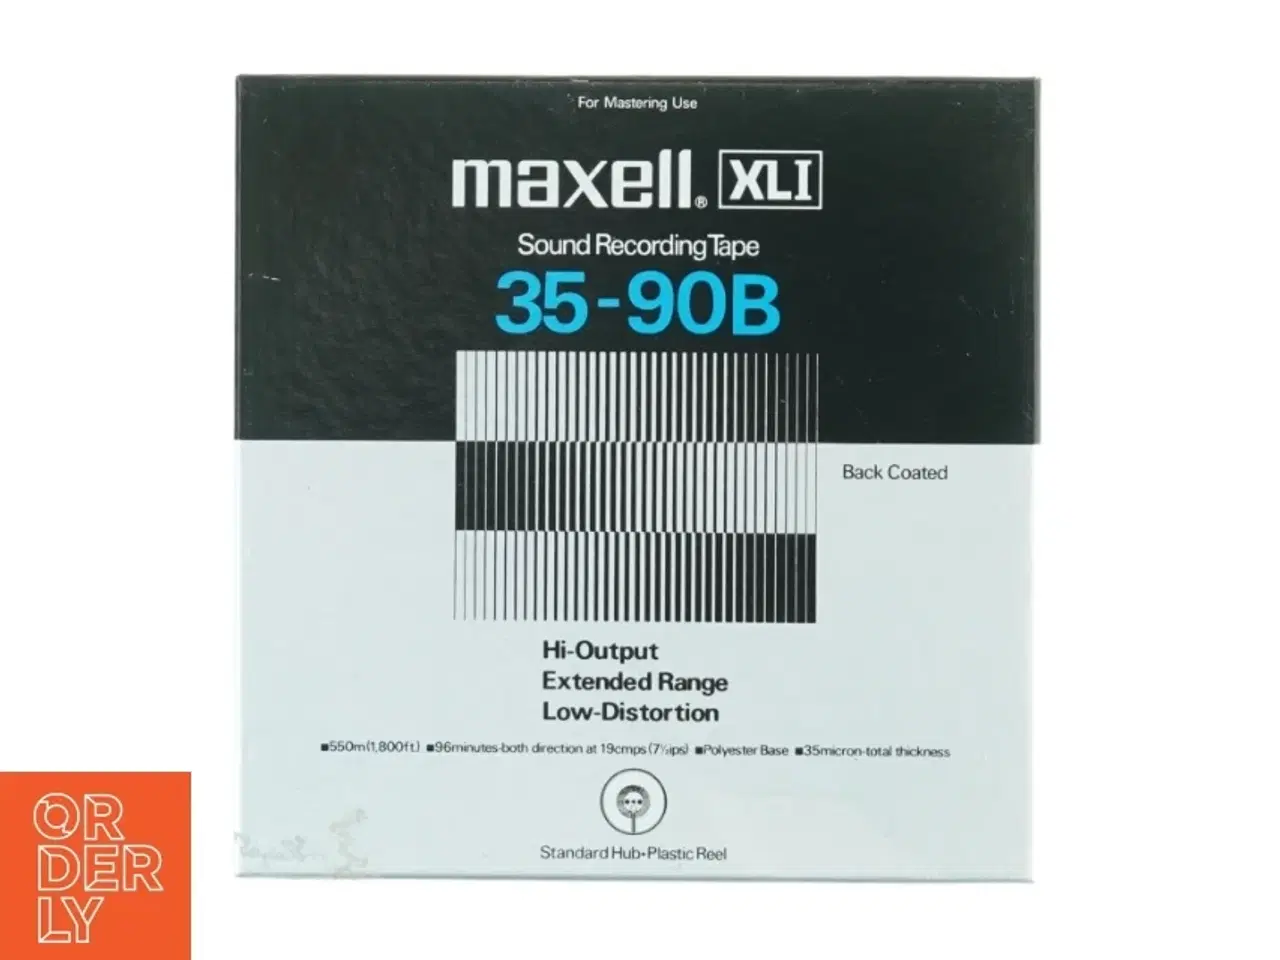 Billede 1 - Maxell XLI 35-90B Audio Tape fra Maxell (str. 18 x 18 cm)